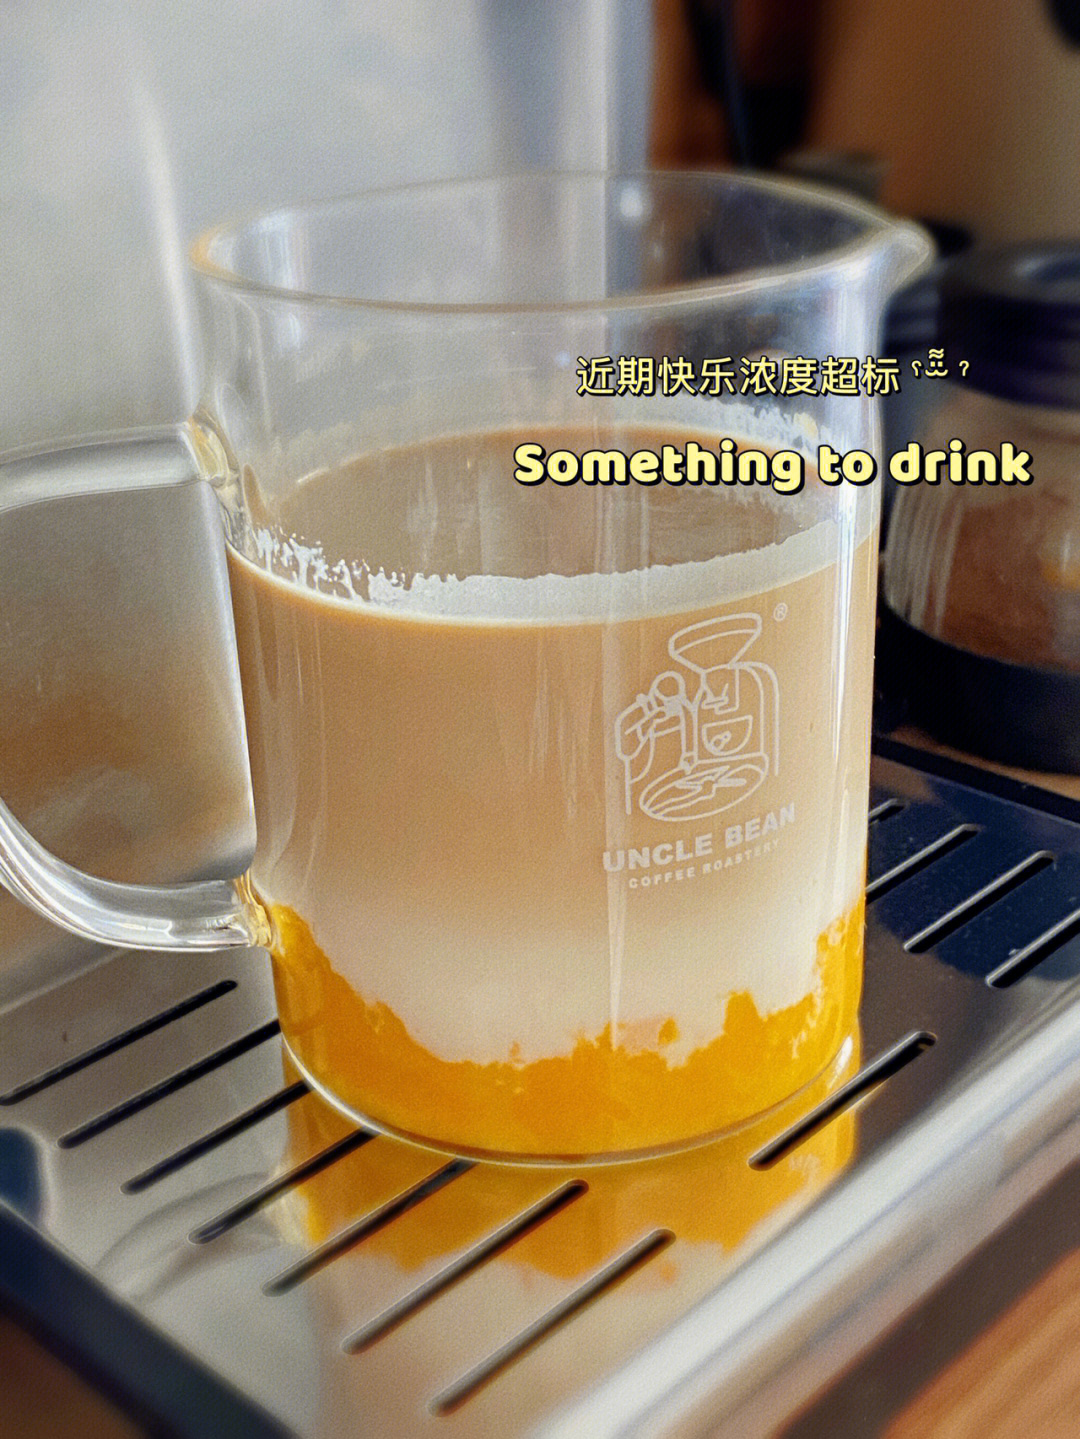 冰块,芒果,牛奶/厚椰乳,咖啡99做法一:03 芒果切块,放入杯中,压成